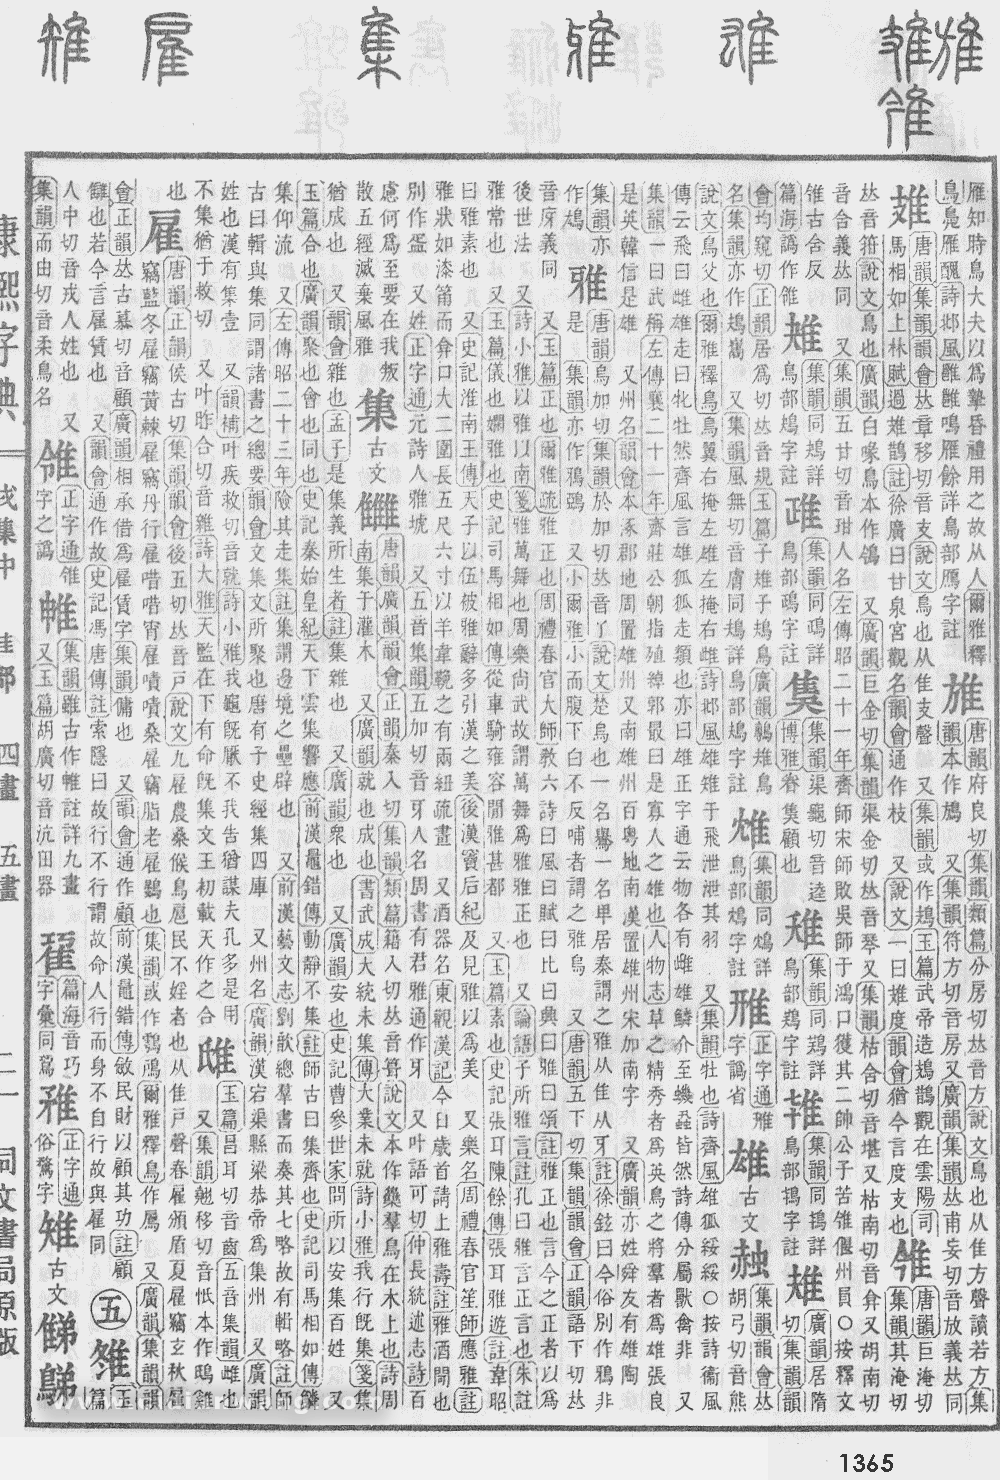 康熙字典掃描版第1365頁